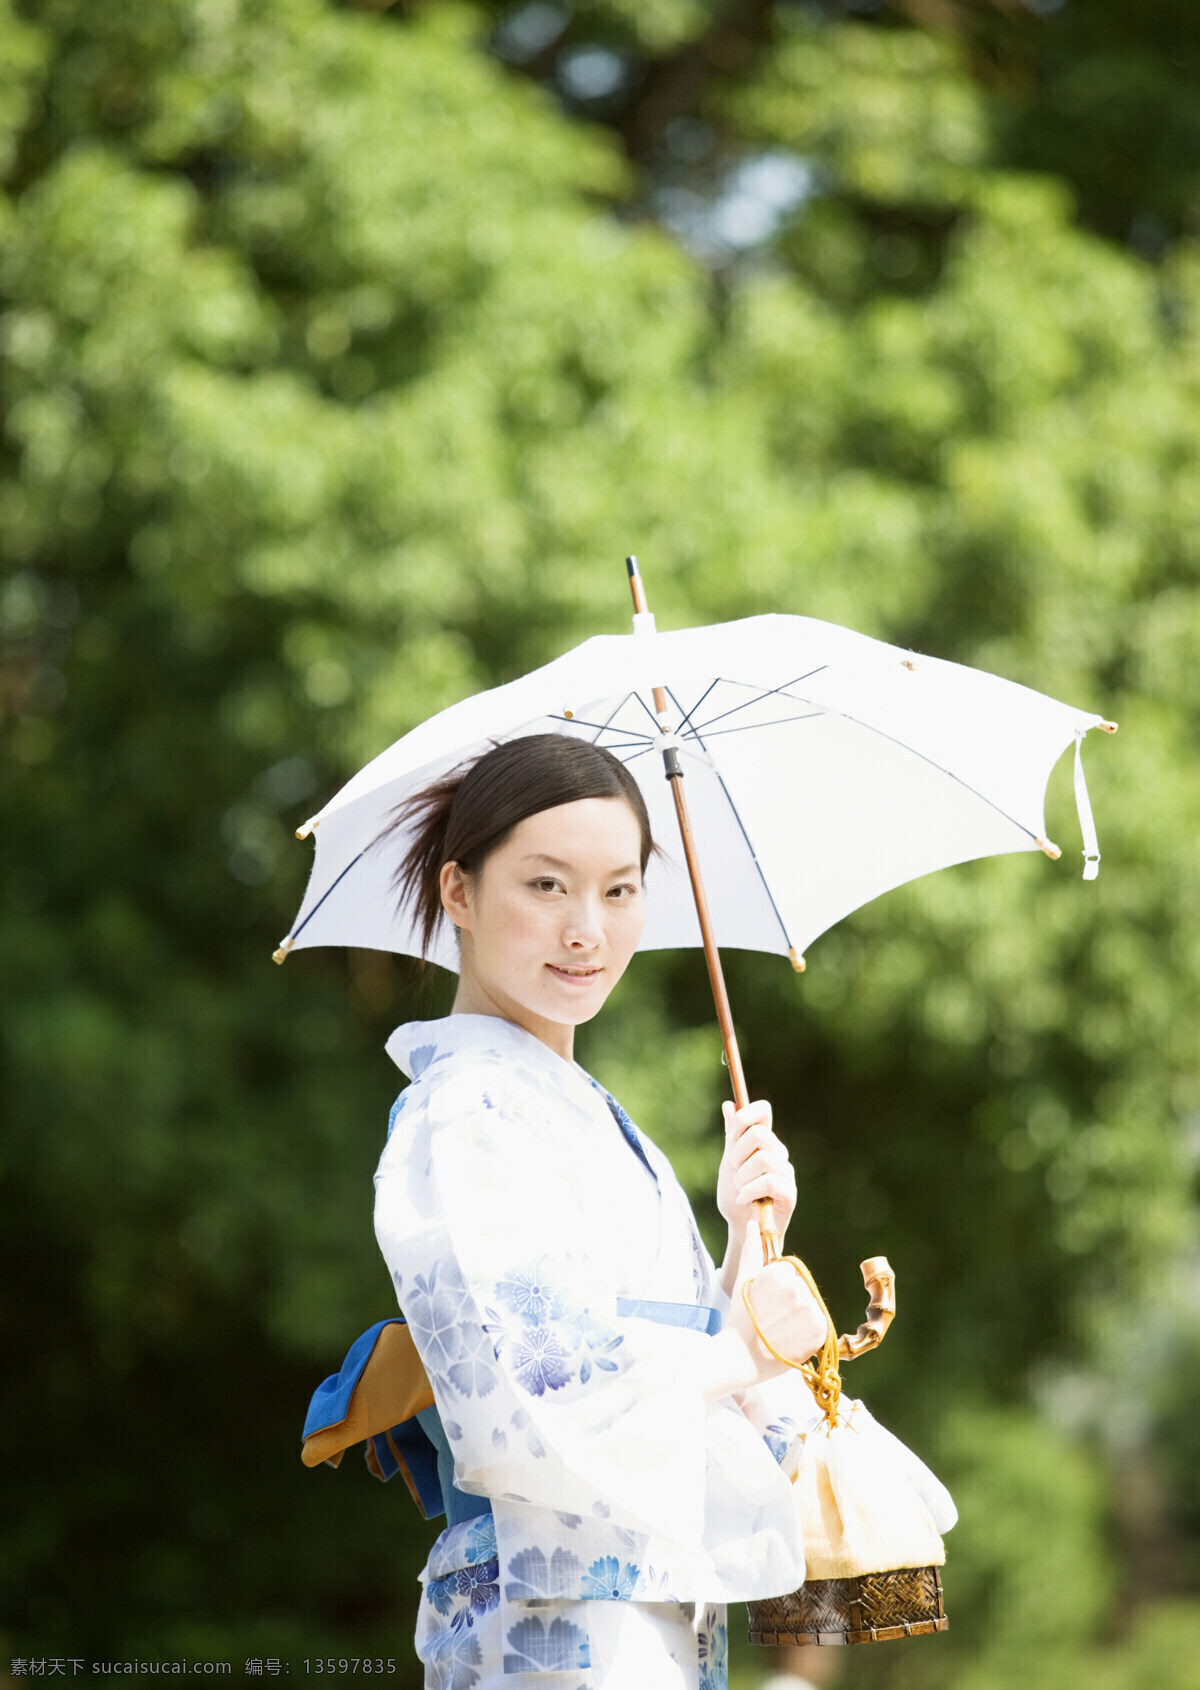 太阳伞 日本美女 日本夏天 女性 性感美女 日本文化 打伞 和服 模特 美女写真 摄影图 高清图片 美女图片 人物图片